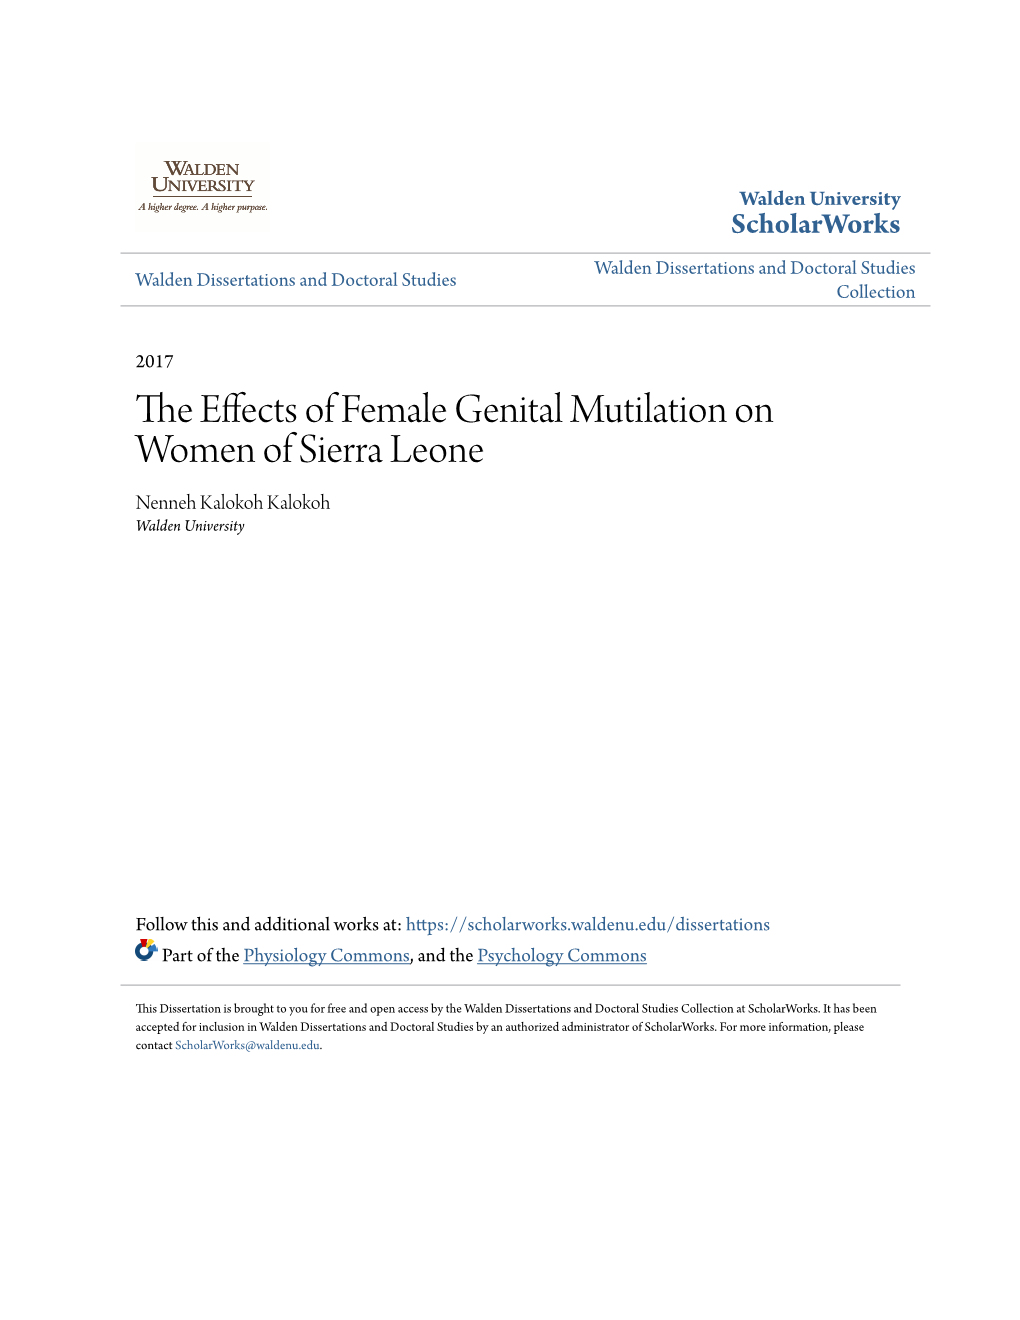 The Effects of Female Genital Mutilation on Women of Sierra Leone